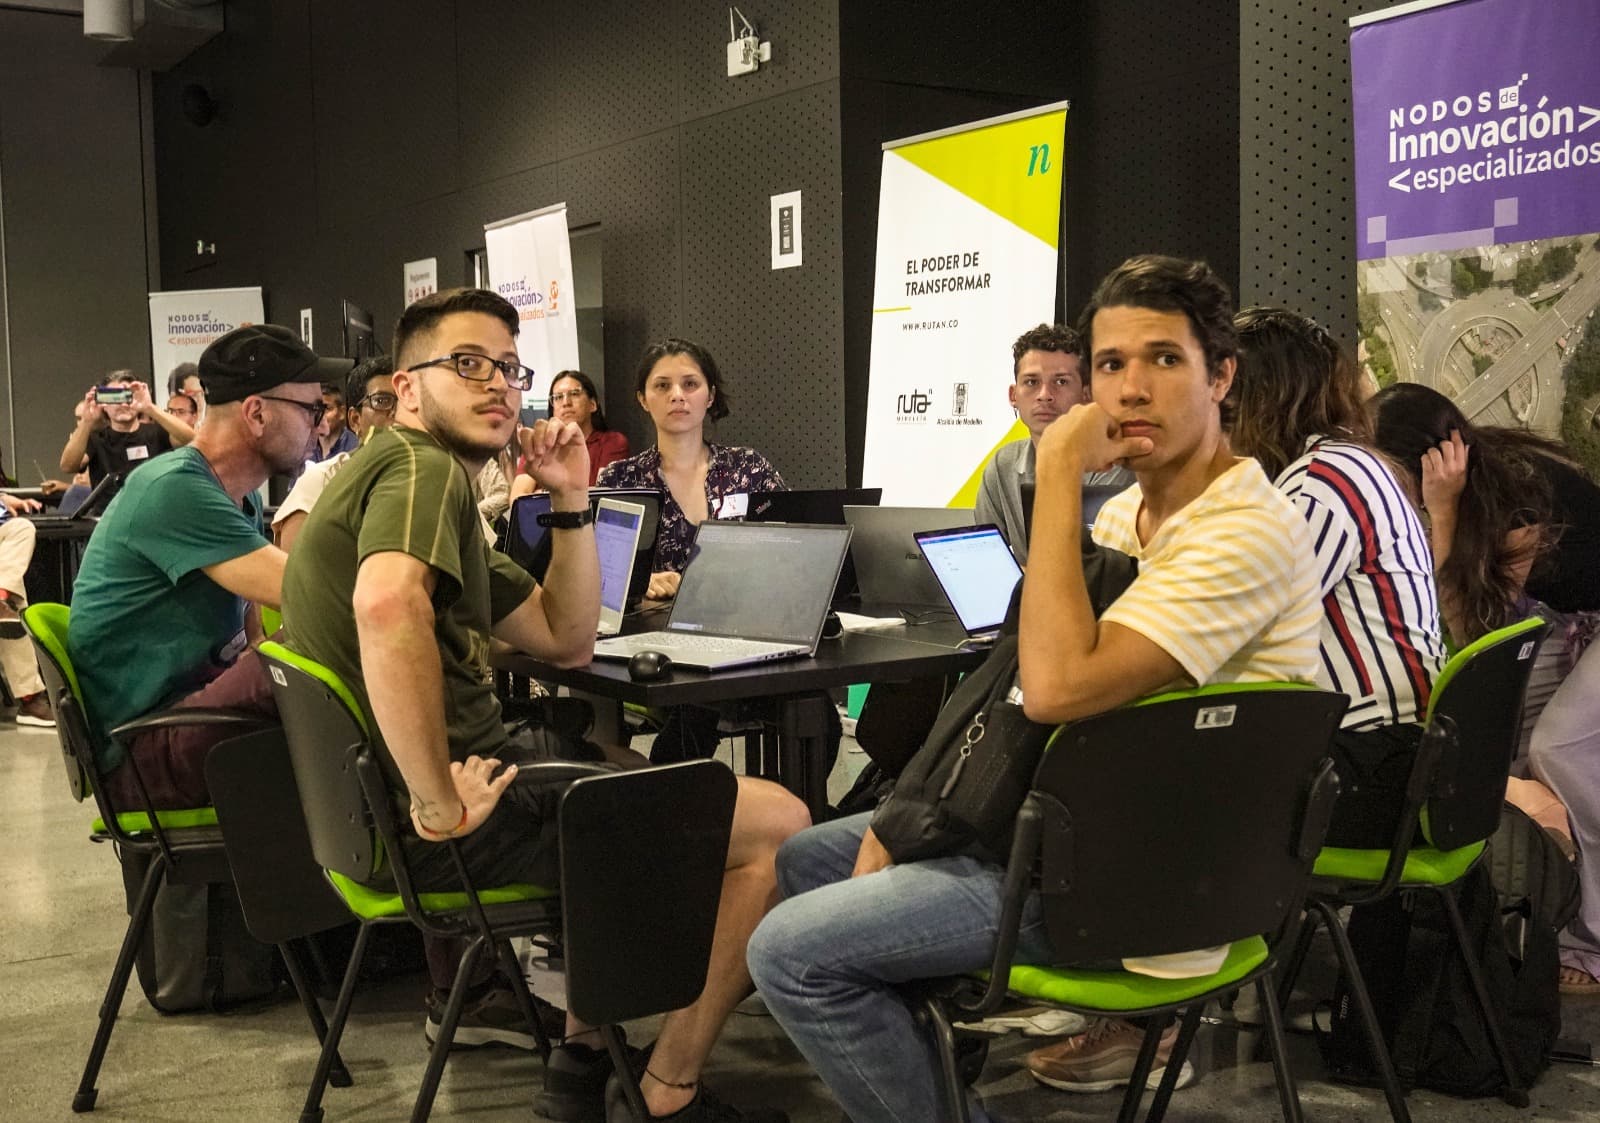 Nodos de Innovación Especializados: el programa que transforma Medellín hacia el futuro 